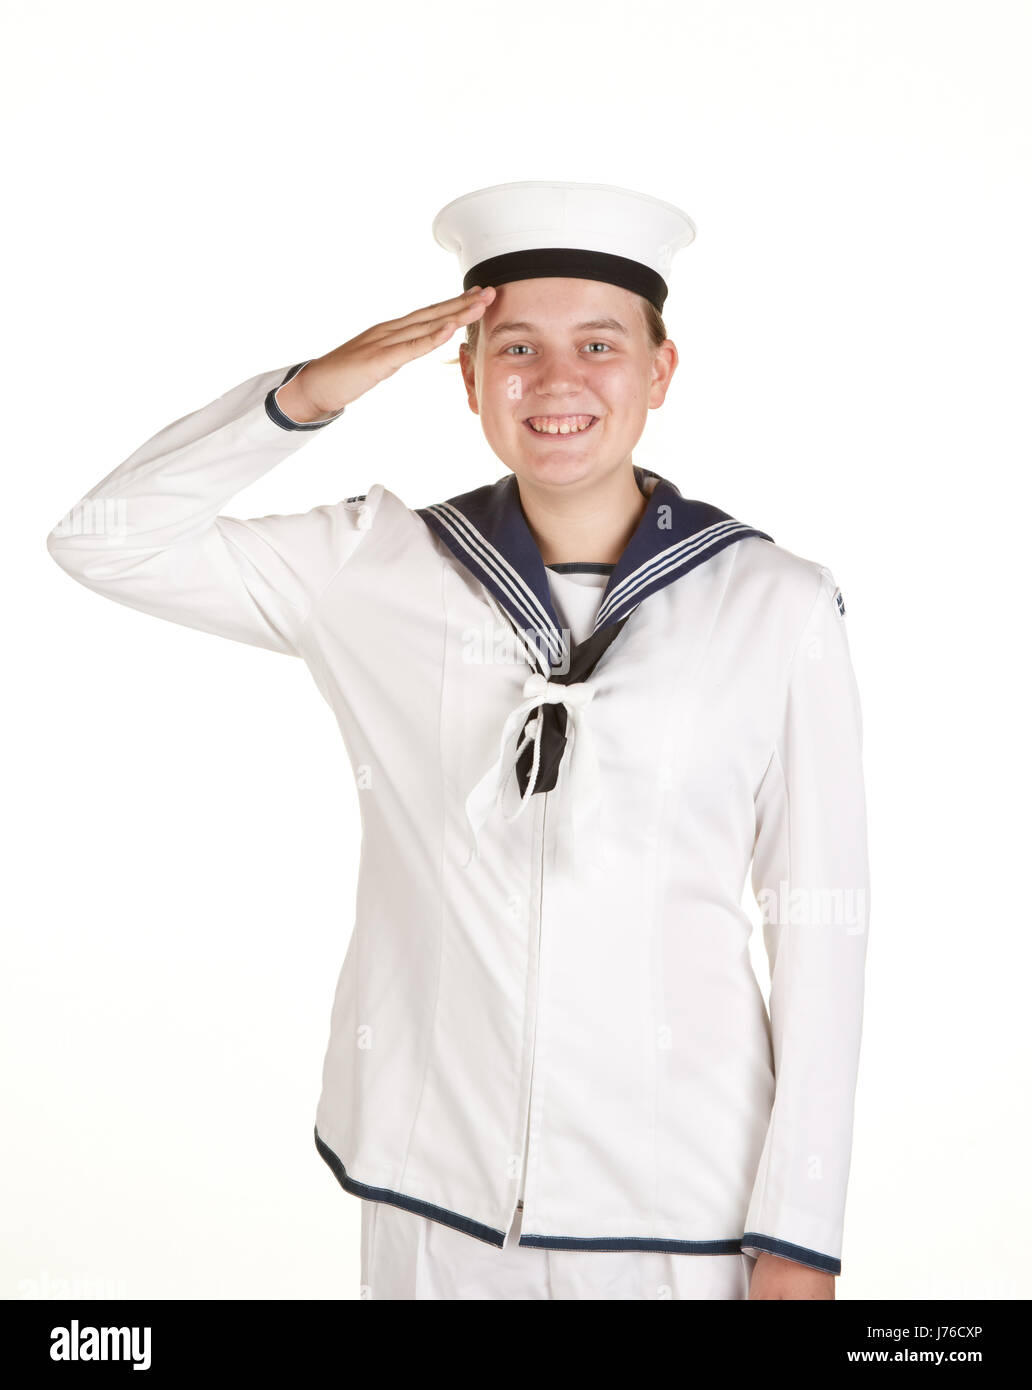 weibliche Marine uniform Seemann marine Seemann jüngere Mädchen Mädchen  Mädchen Stockfotografie - Alamy